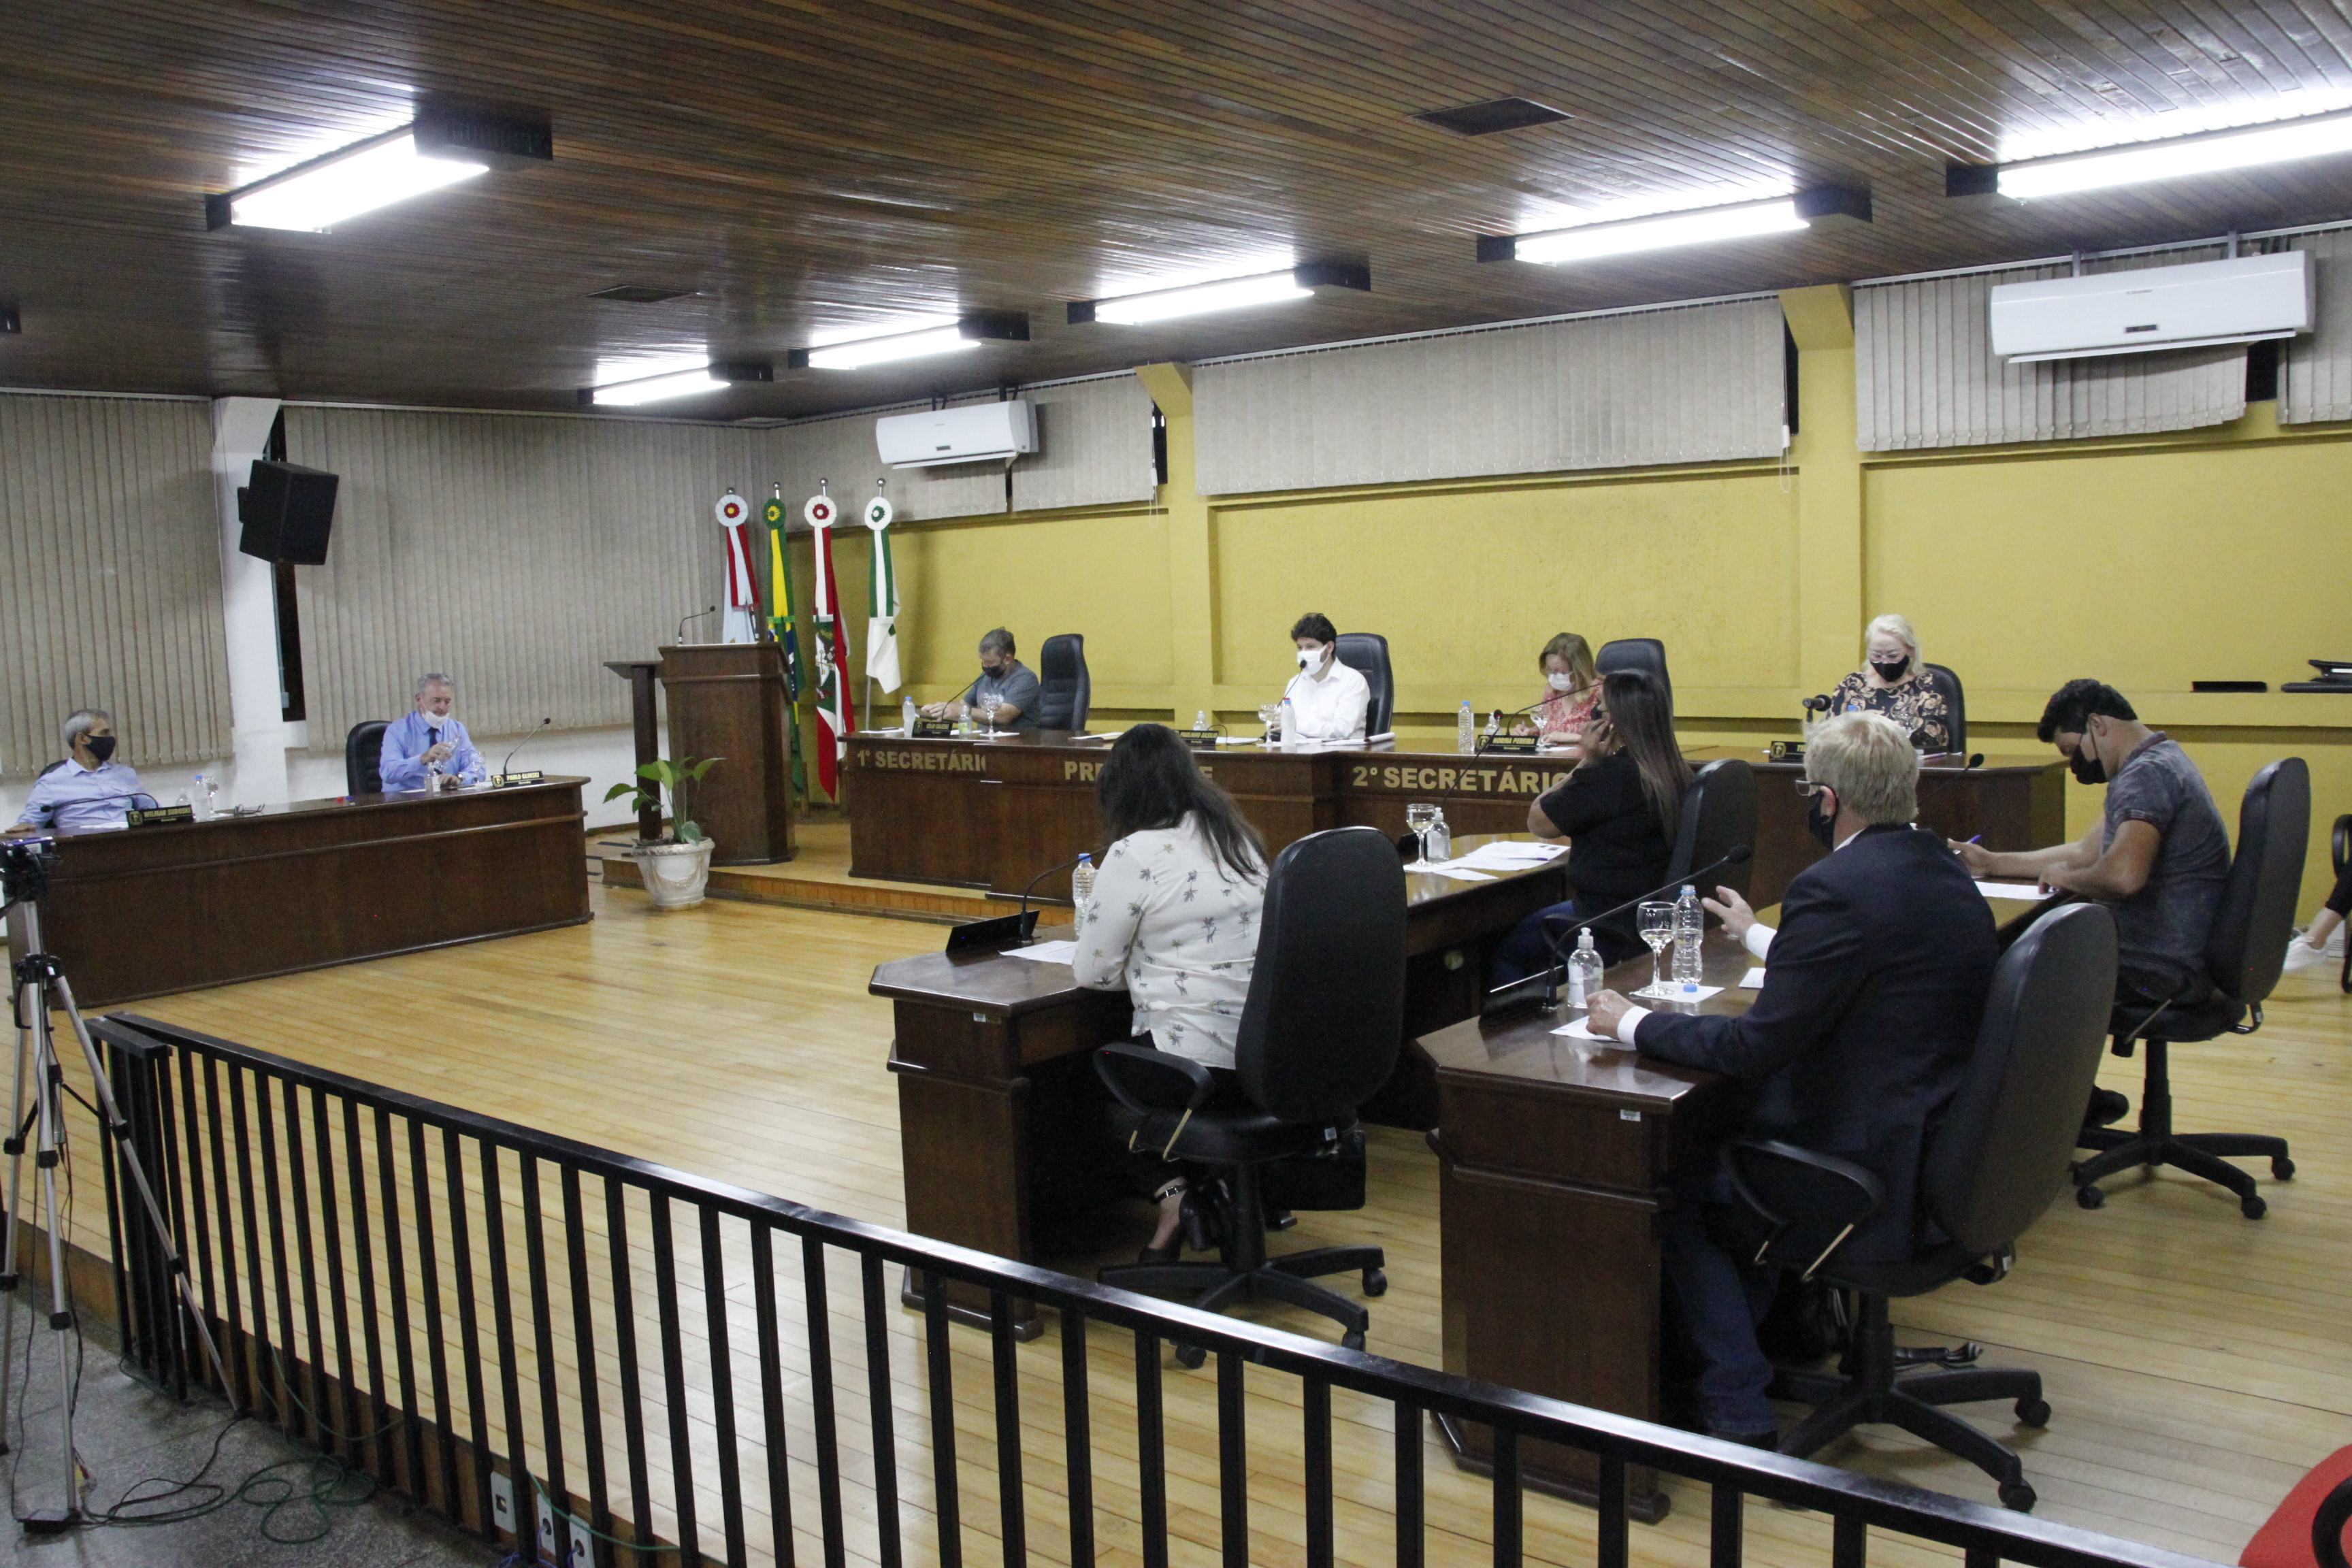 Eleição municipal é destaque em sessão